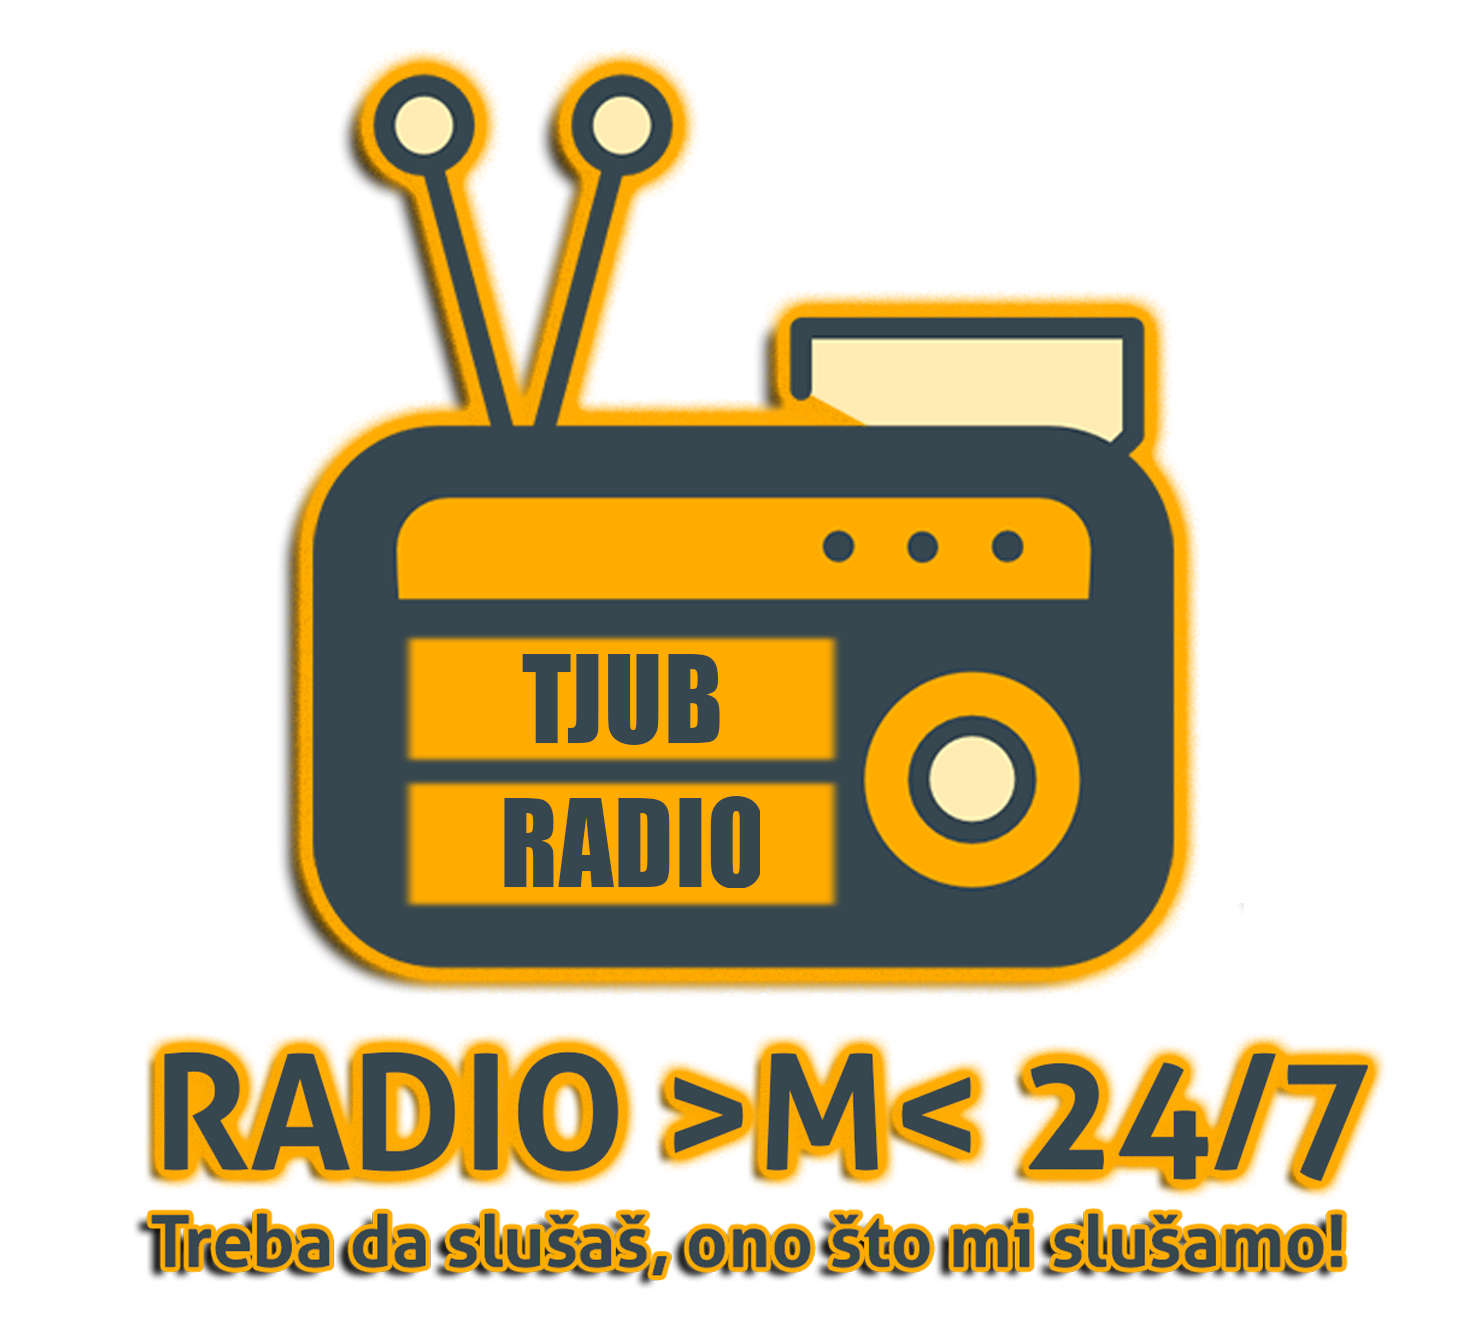 Radio M - Tjub